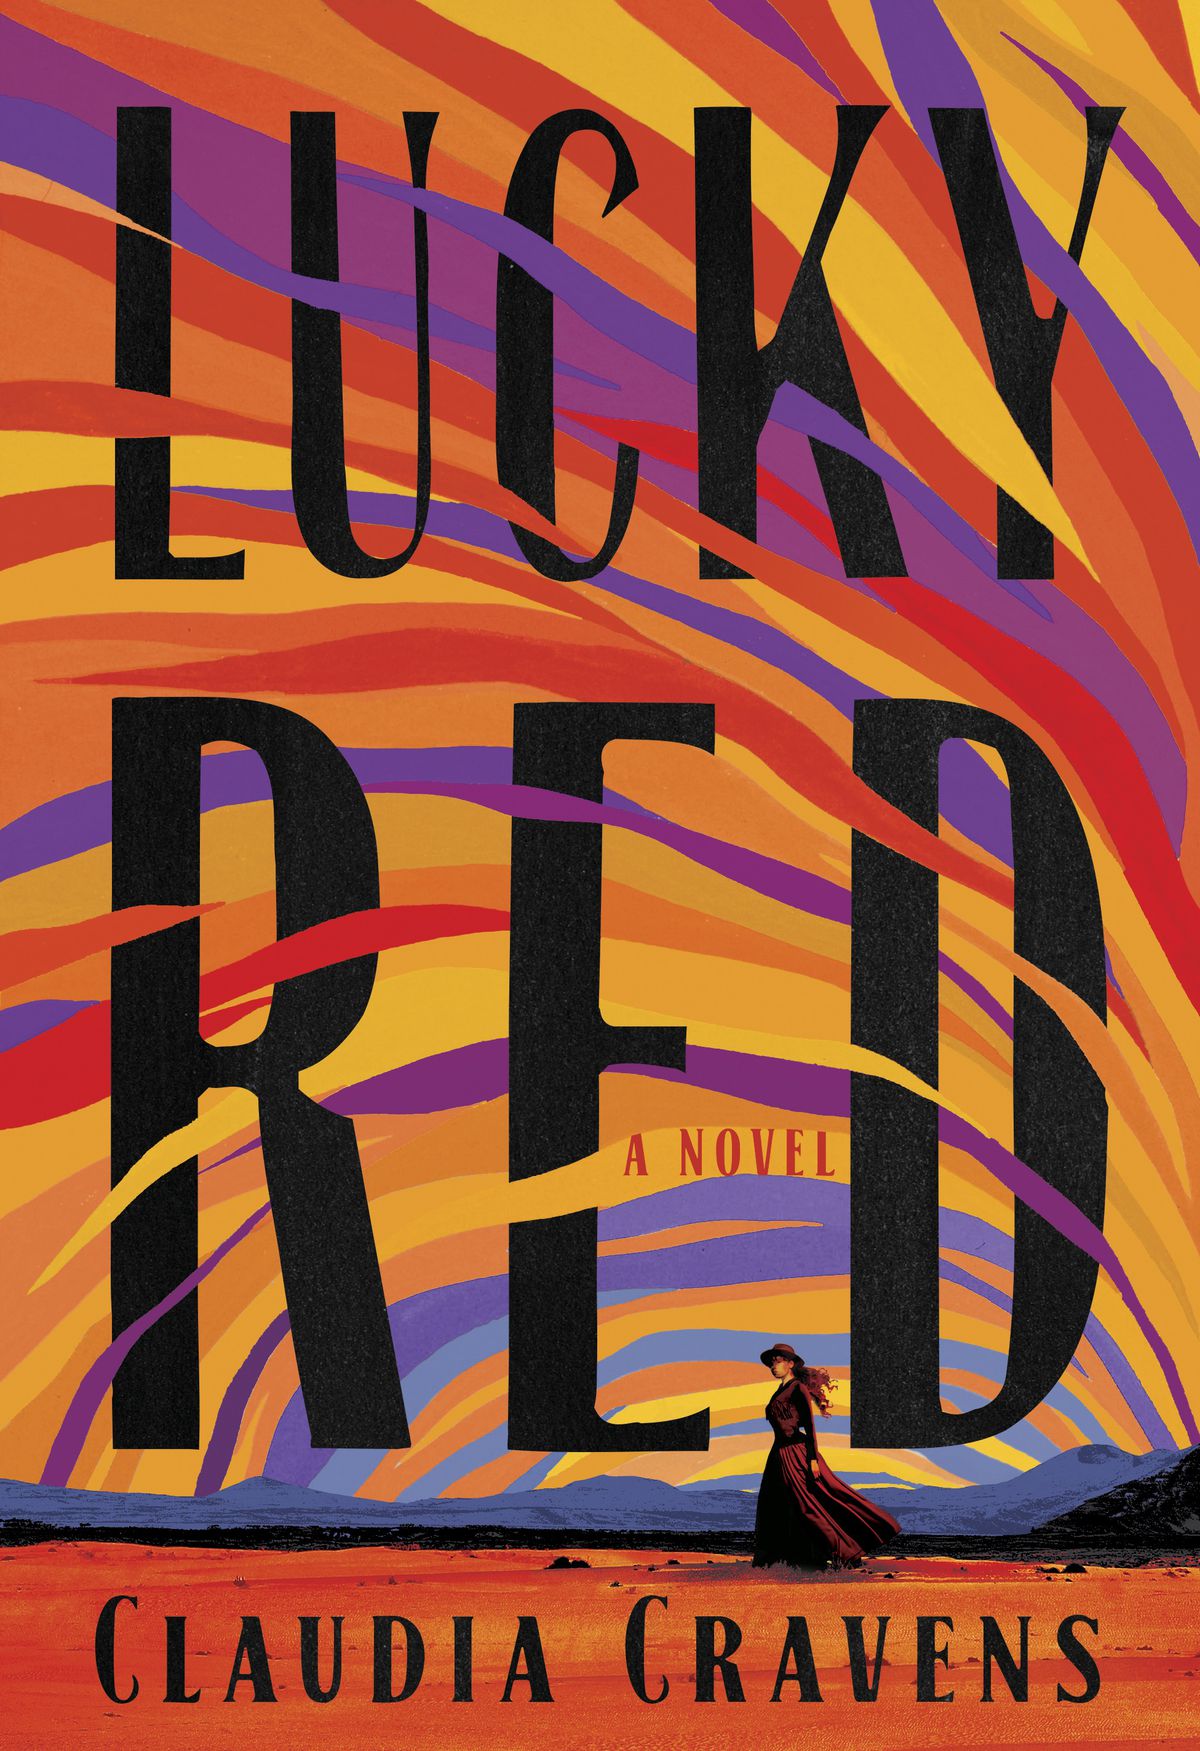 Immagine di copertina per Lucky Red di Claudia Cravens, che mostra una donna in piedi nel deserto con un cielo colorato dipinto con linee viola, rosse, gialle e arancioni.